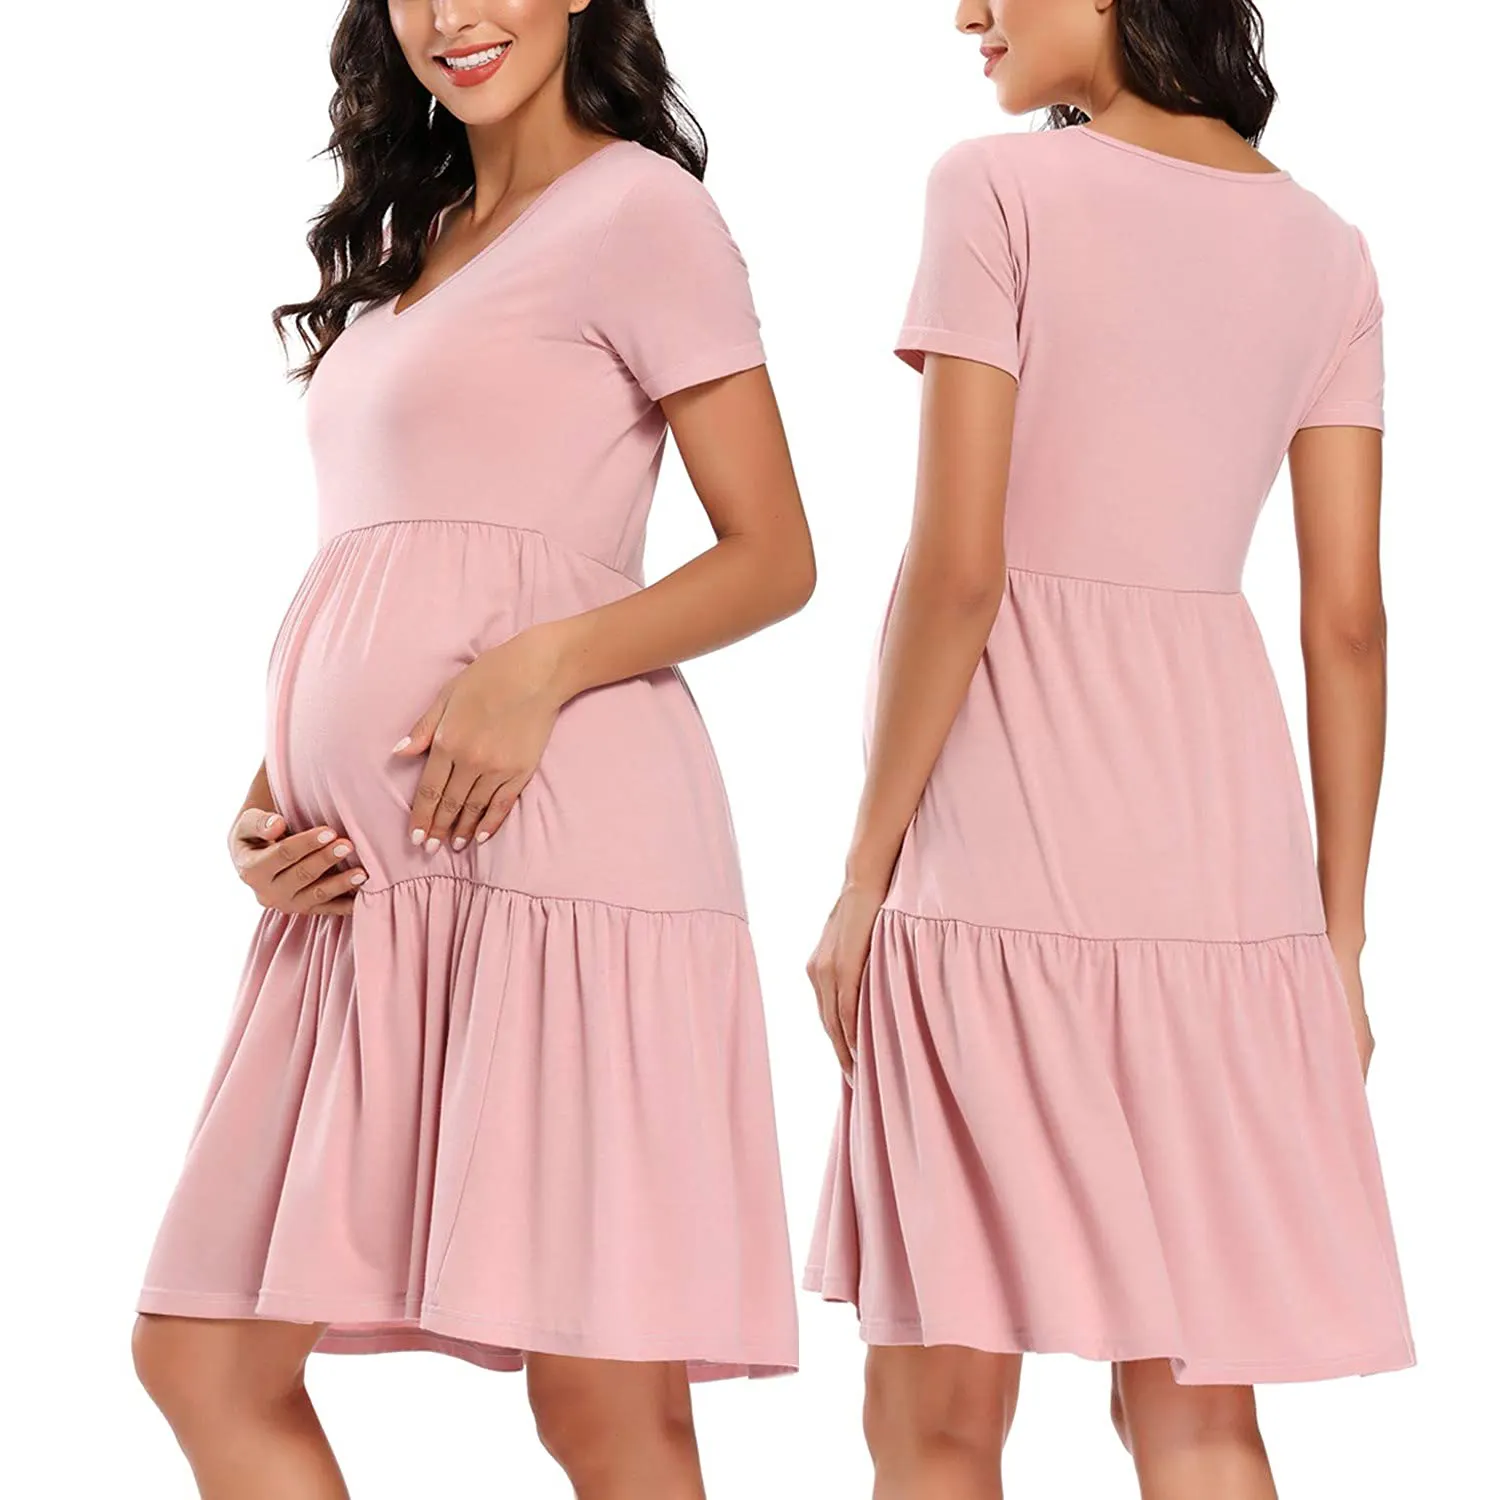 Ladymate roupa de maternidade para mulheres, roupas de maternidade impressão de bolinhas casuais para mulher grávida